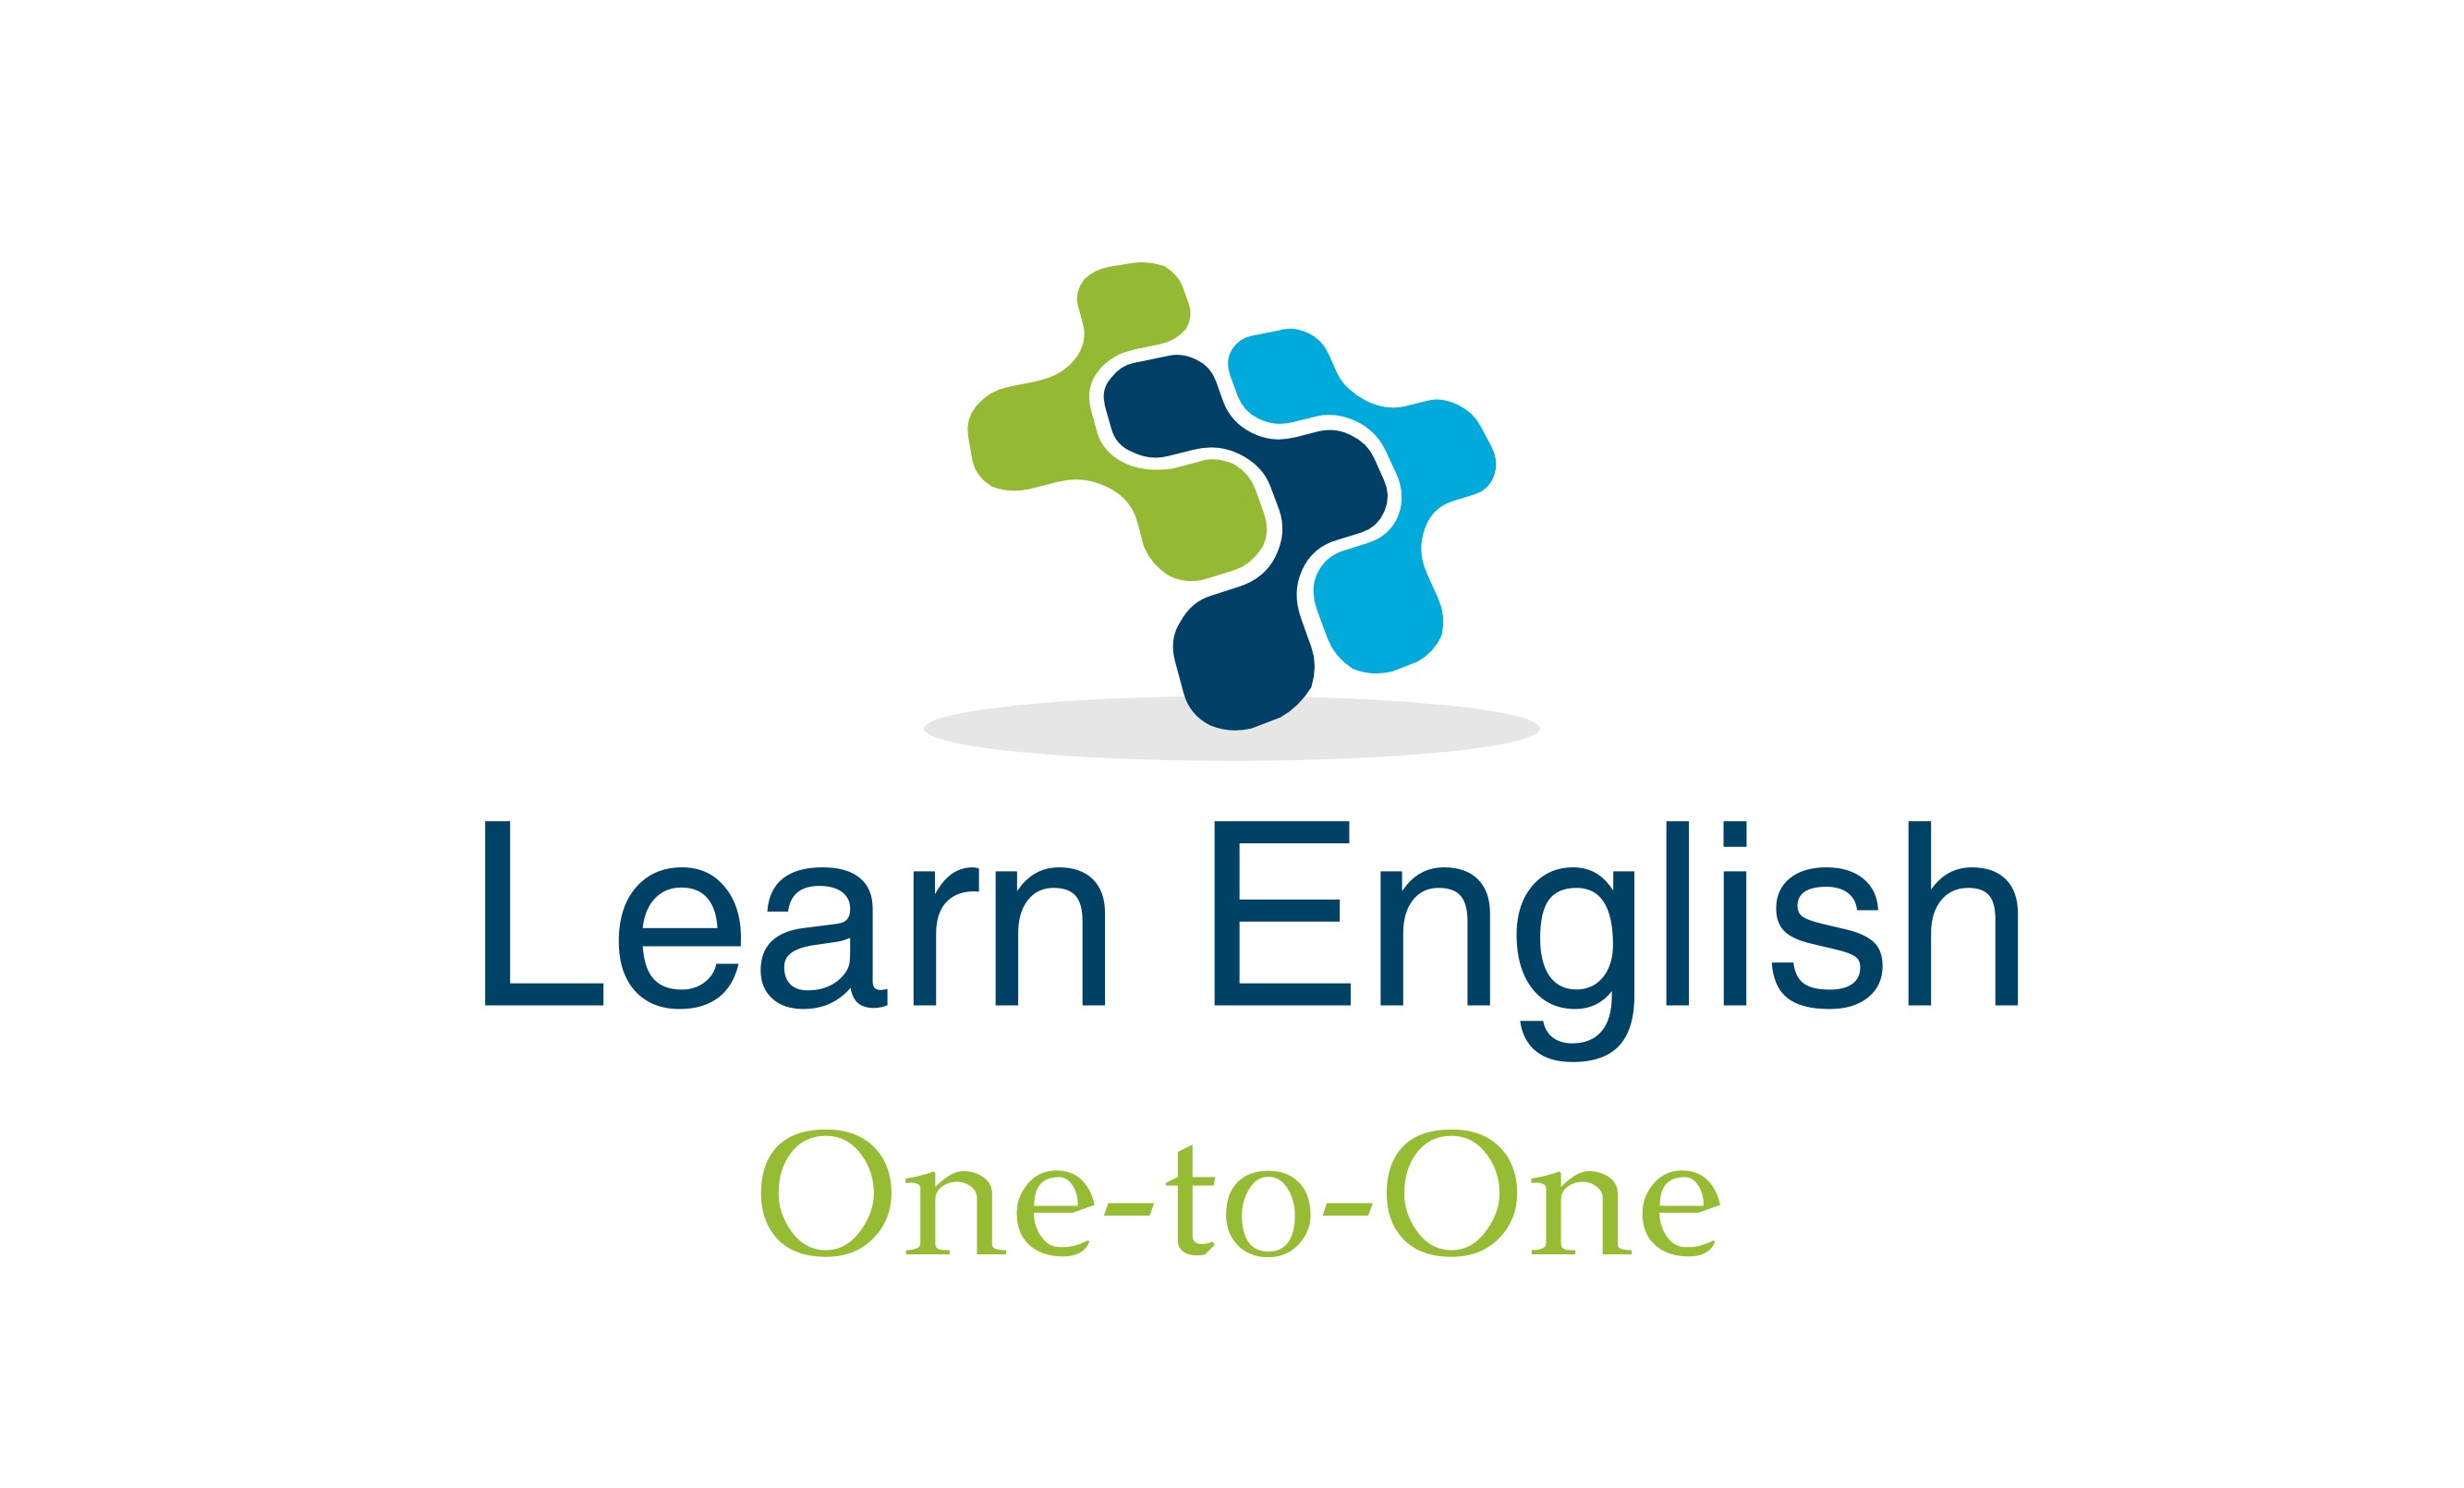 Mungkin Anda banyak mencari tentang cara cepat belajar bahasa Inggris dan bagaimana bisa berbicara menulis dan hafal semua aturan tata bahasa dalam bahasa